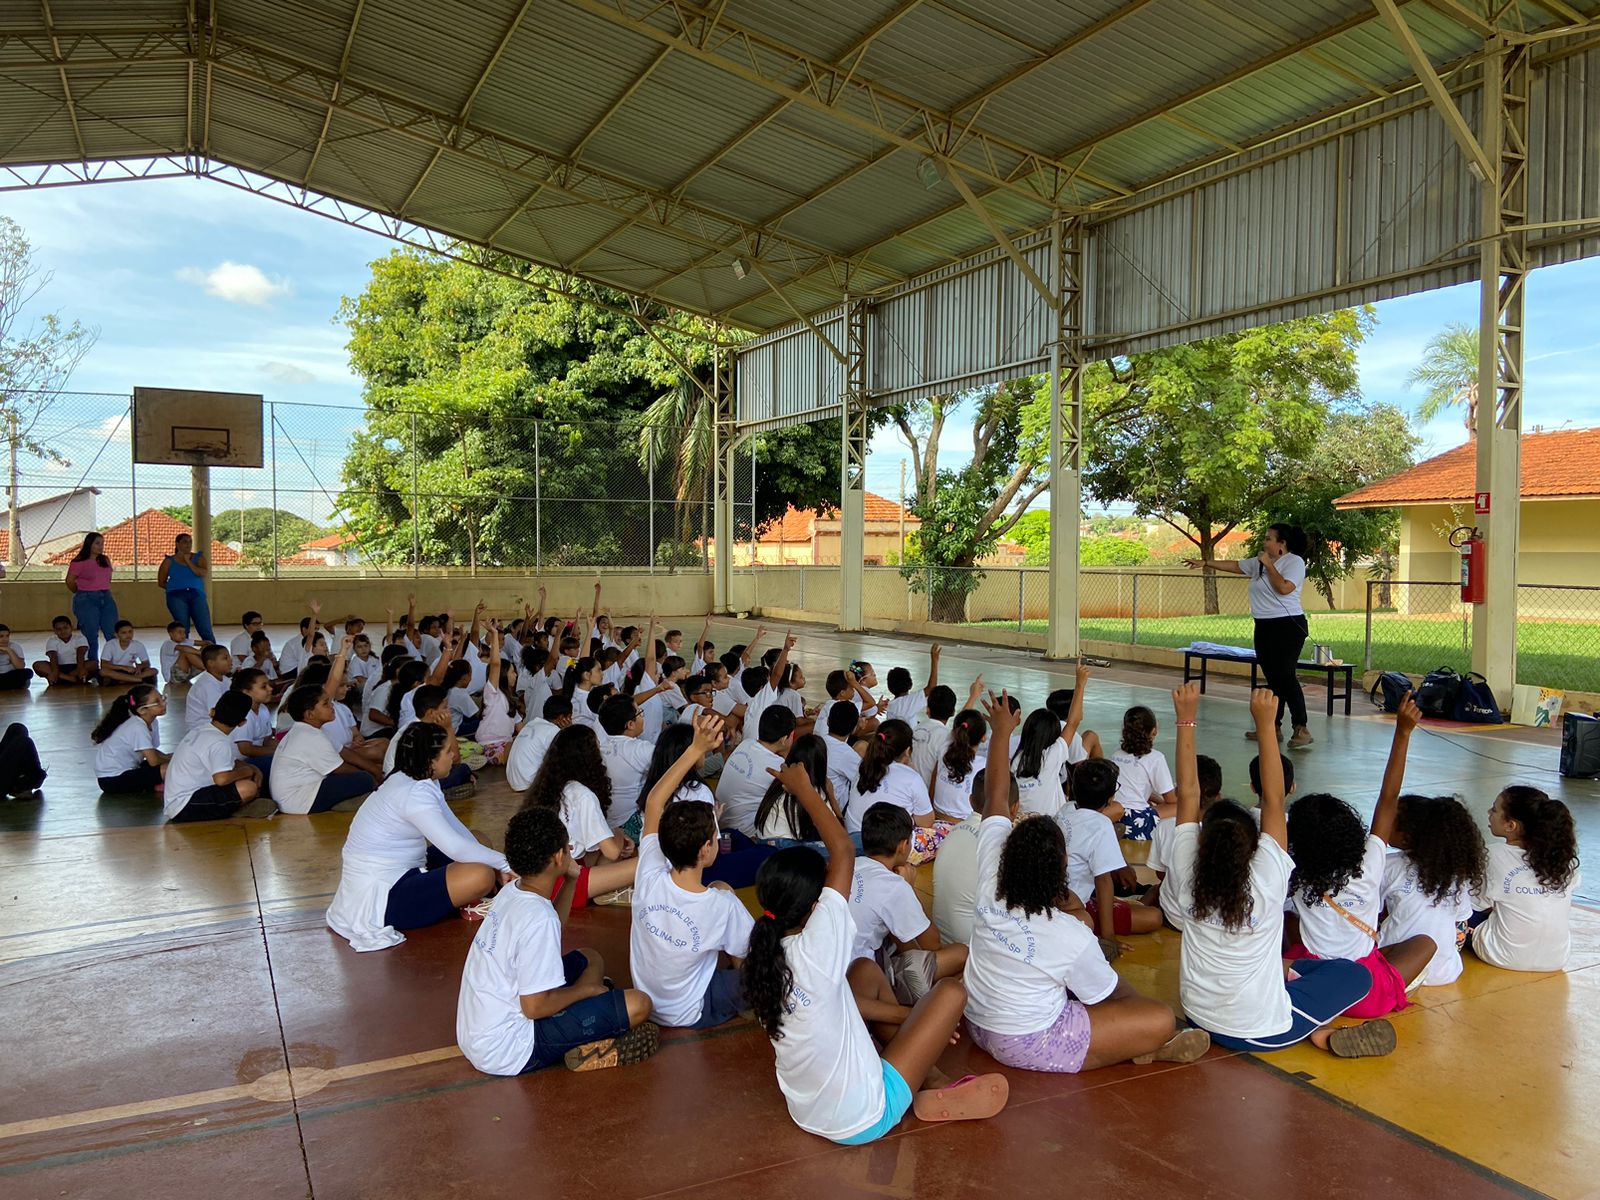 Em comemoração ao Dia da Água, Tereos realiza ação de conscientização em escolas municipais da região